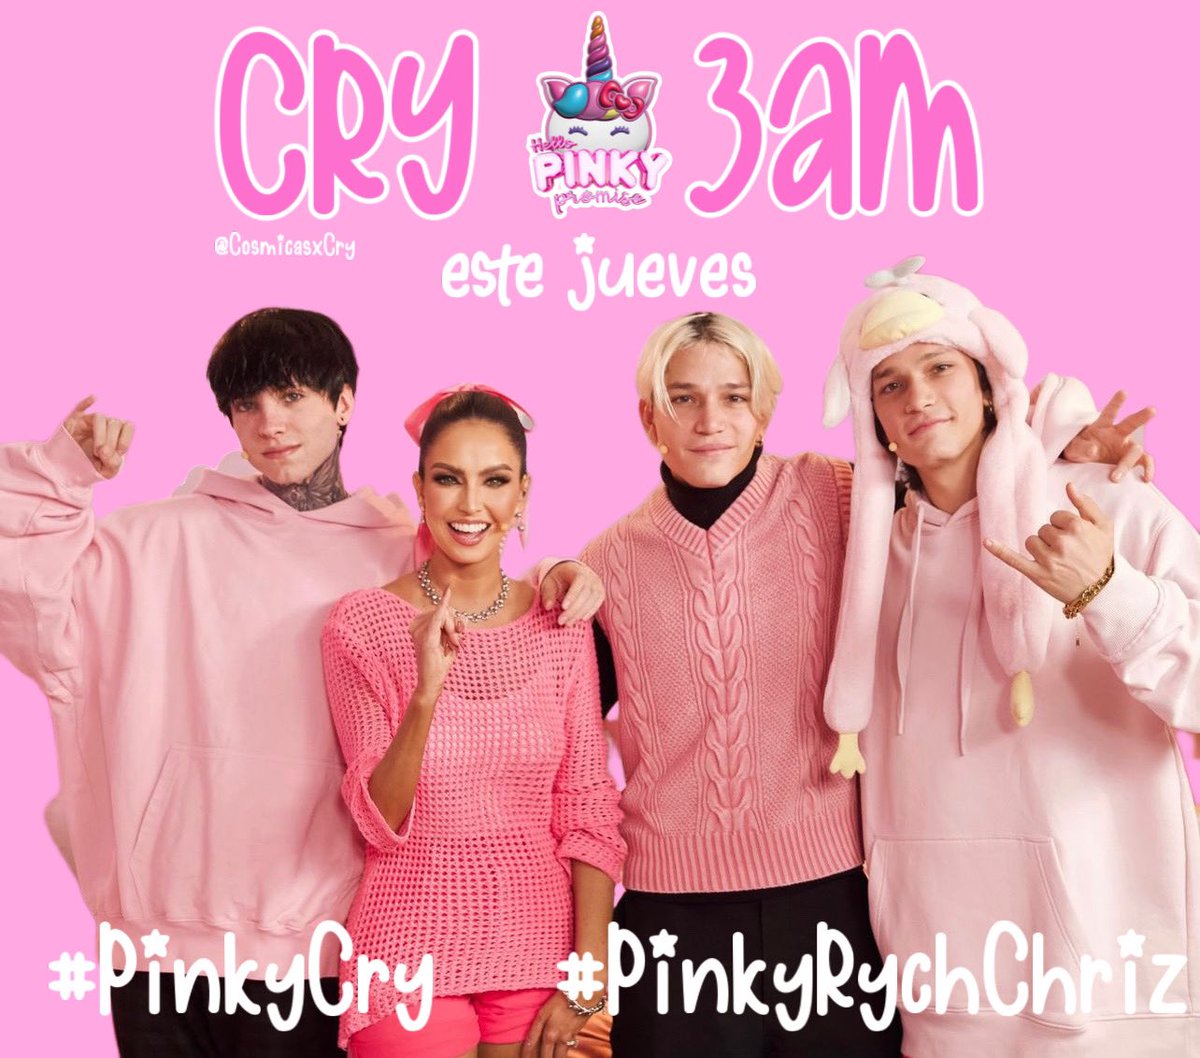 poquito tarde pero seguro, están listos para lo que se viene el jueves?
#PinkyCry y #PinkyRychChriz estarán contándonos algunas anécdotas en pinky promise, que preguntas les hubieran hecho ustedes?